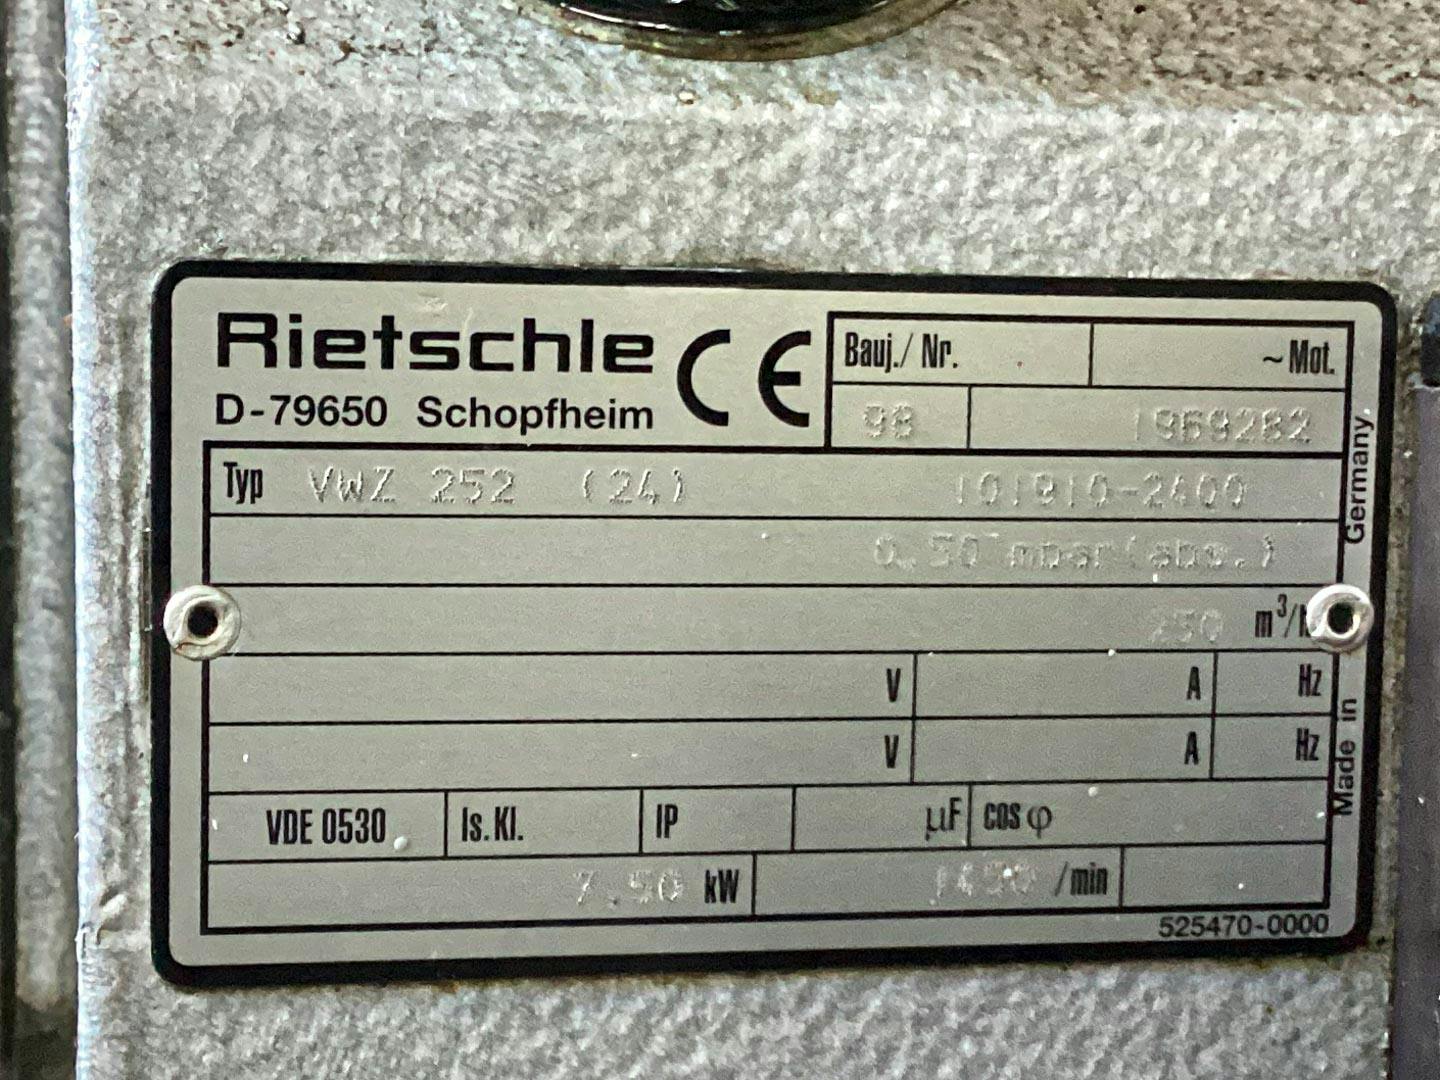 Rietschle VWZ 252 (24) - Vakuové cerpadlo - image 7